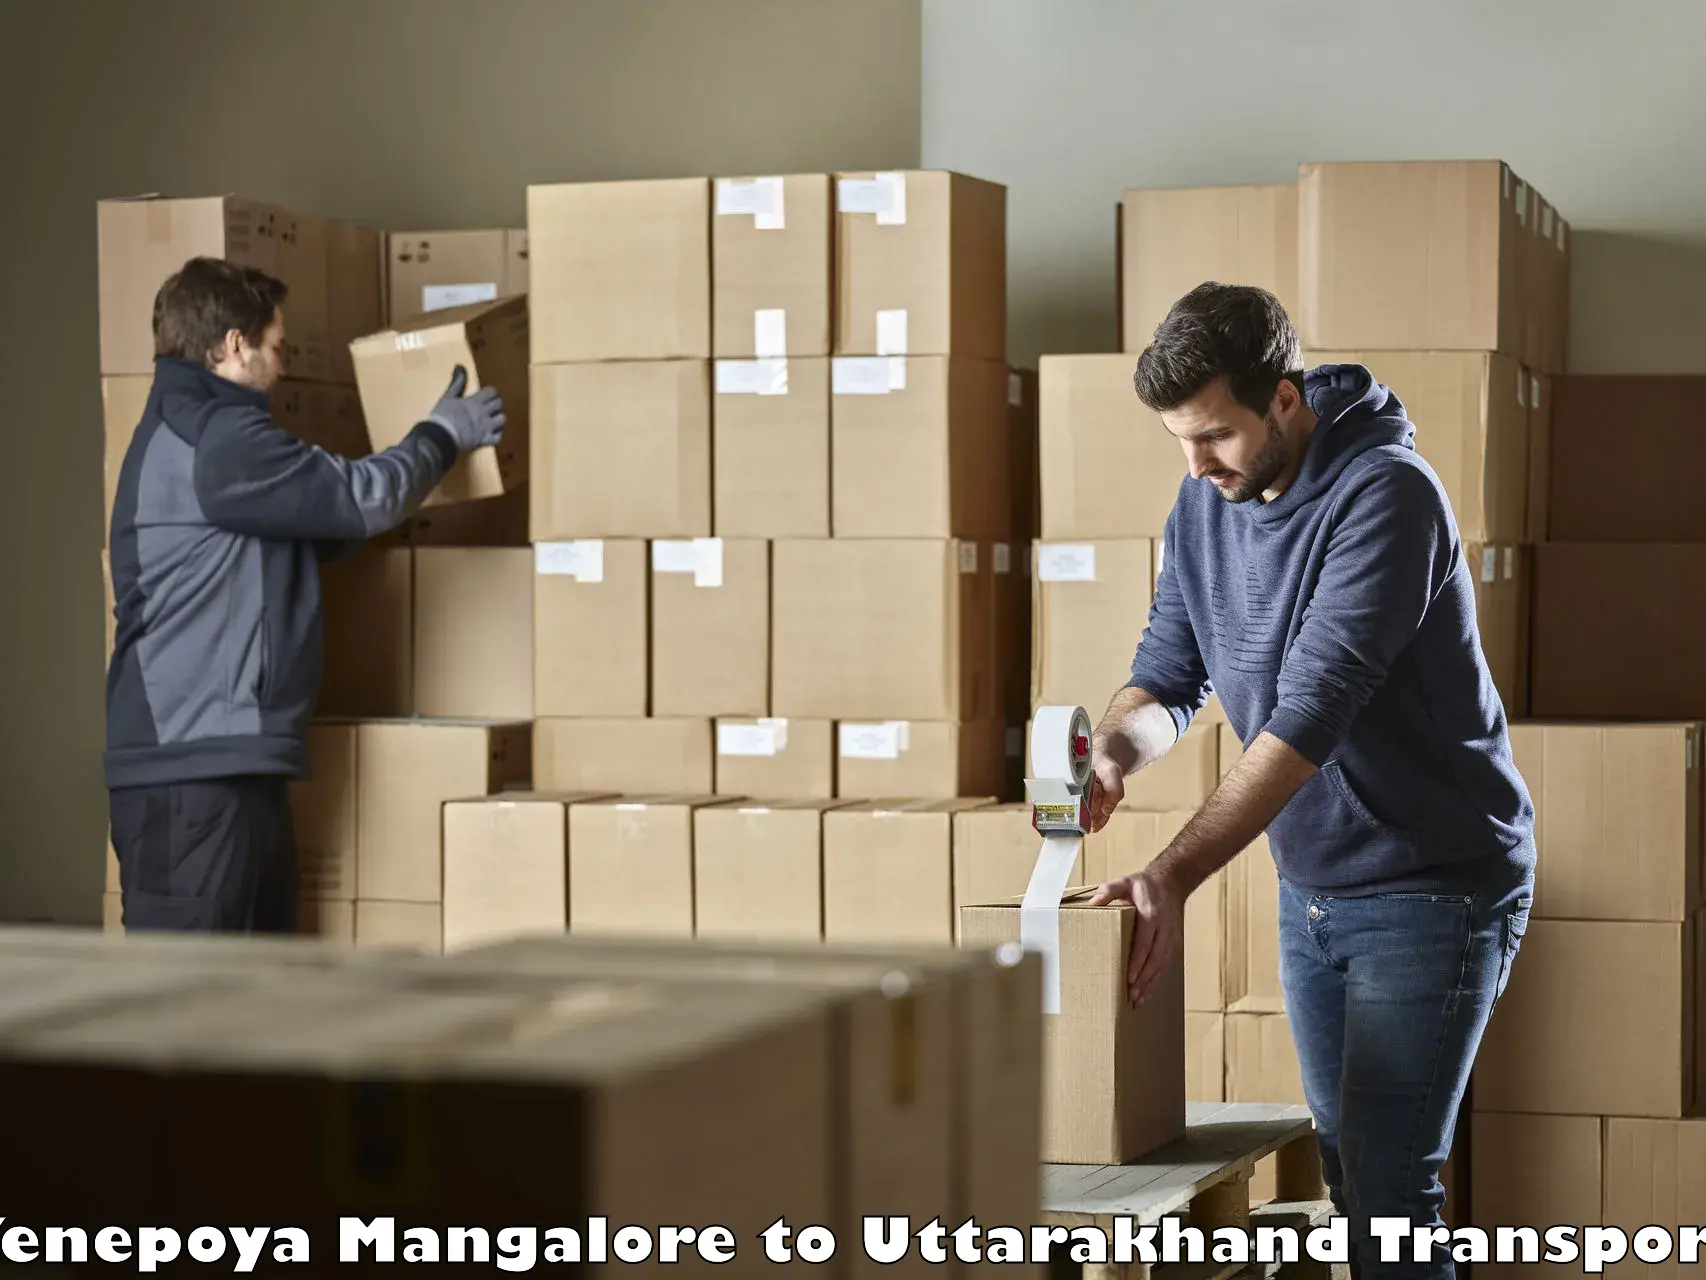 Vehicle parcel service Yenepoya Mangalore to Rishikesh